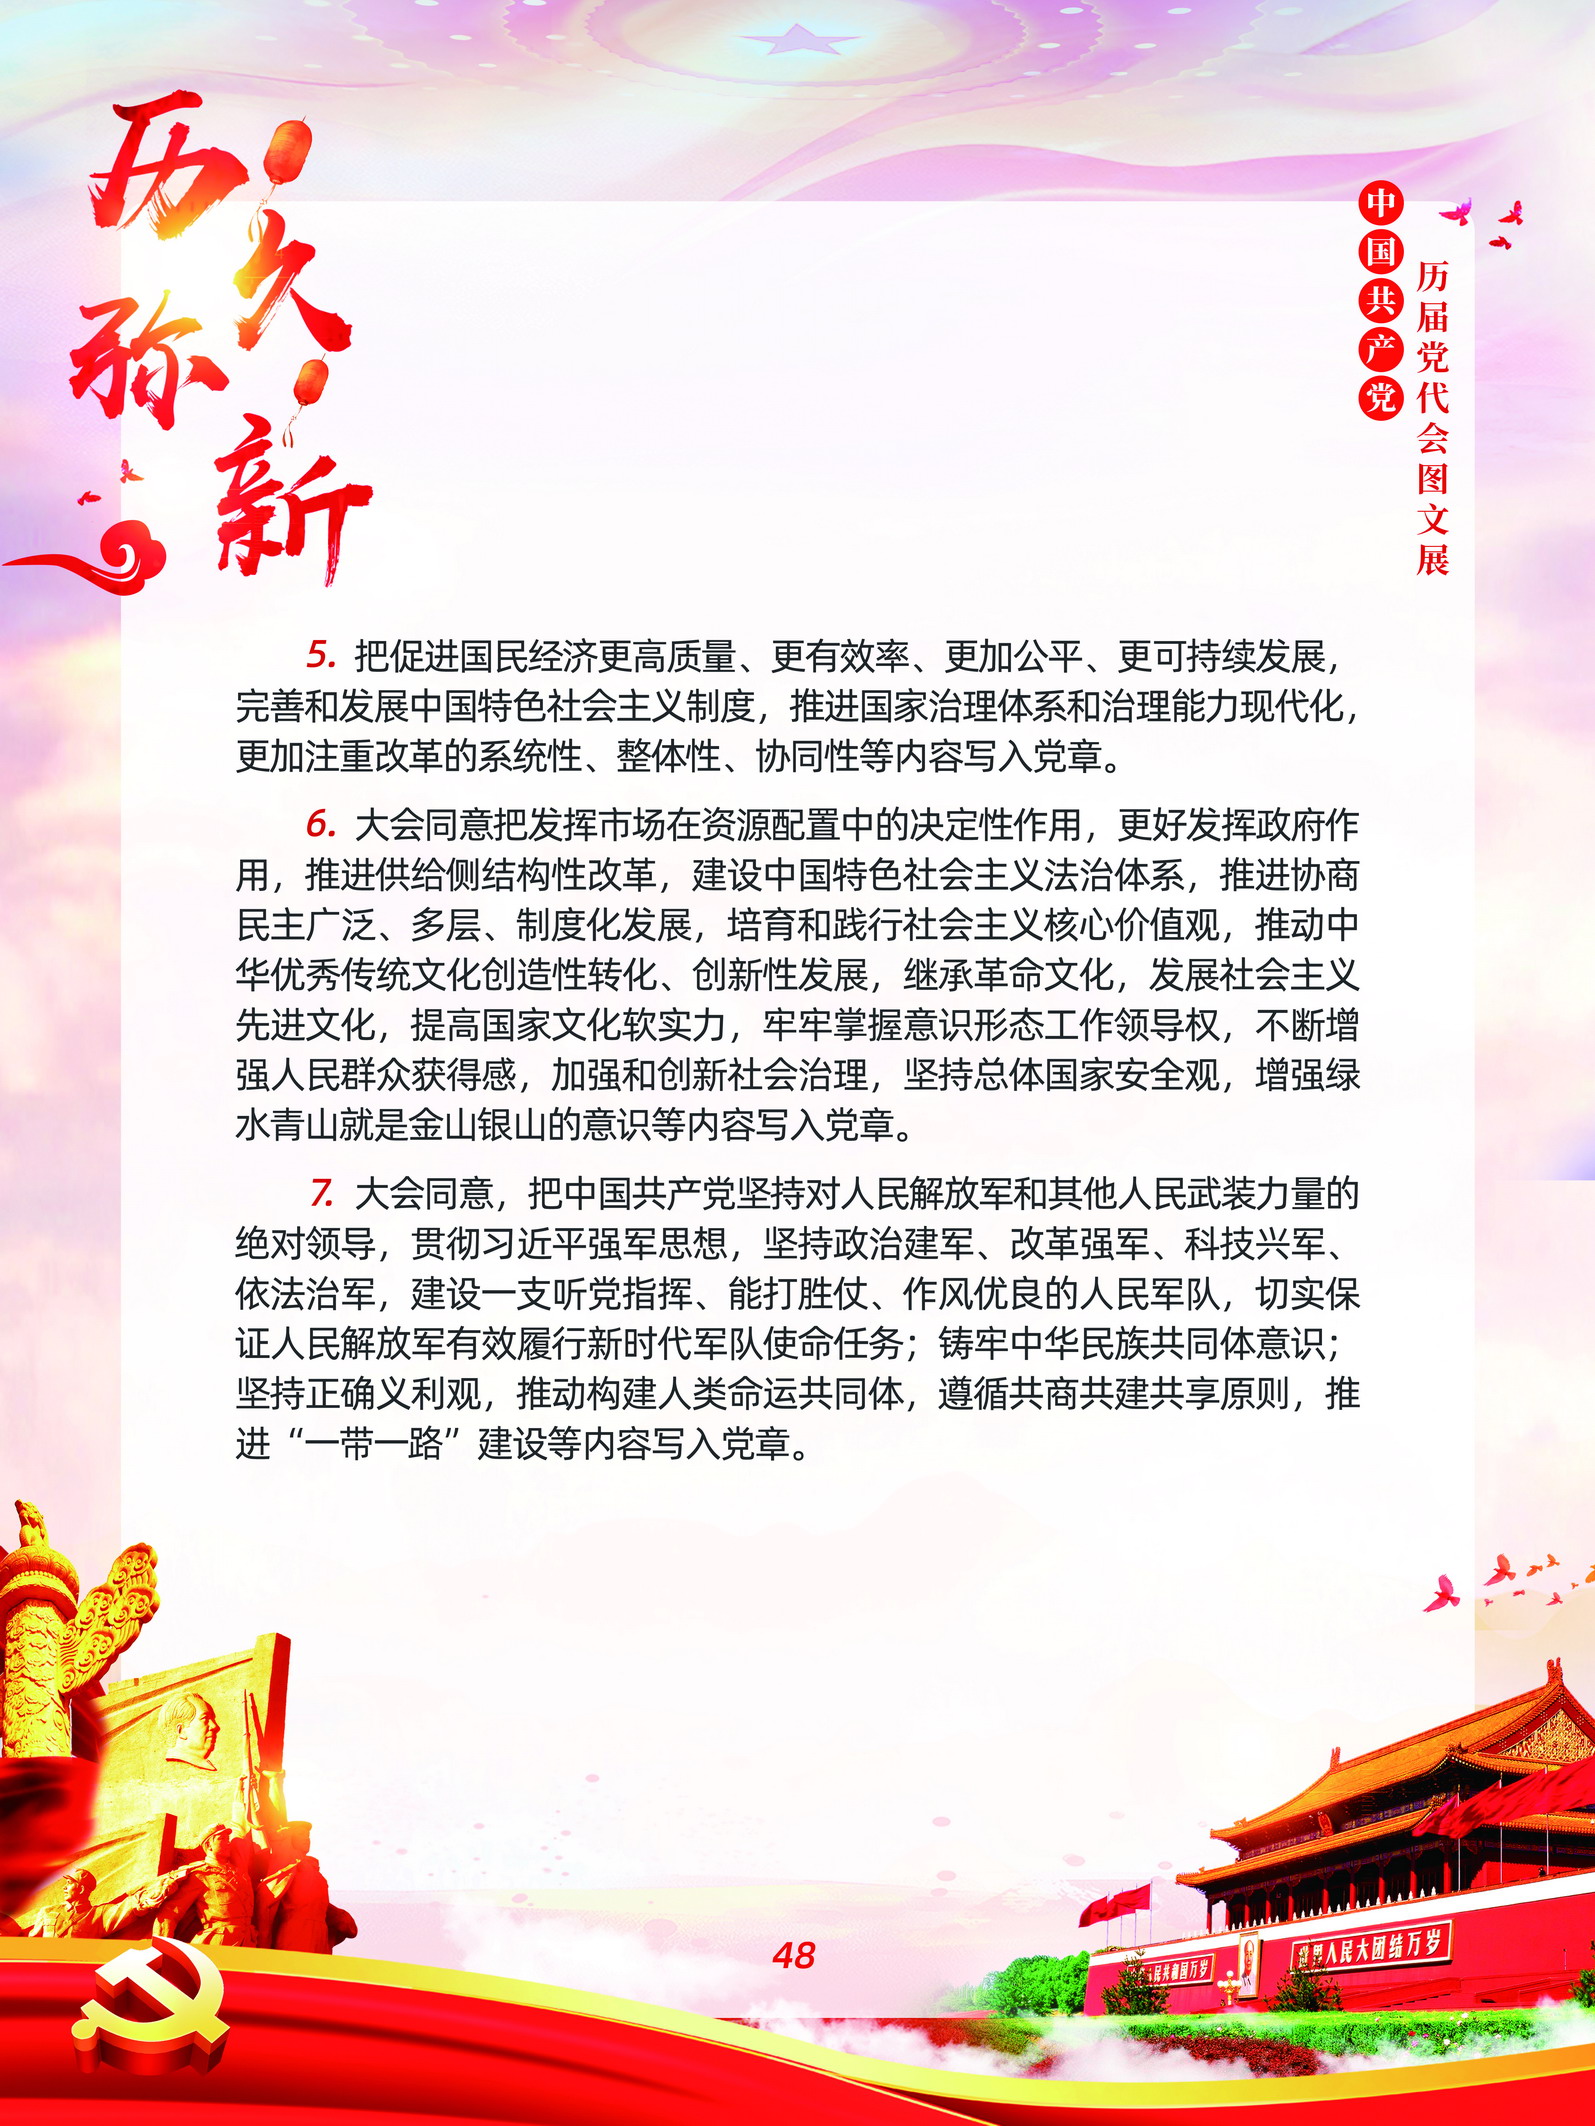 中国共产党历届党代会图文展_图47